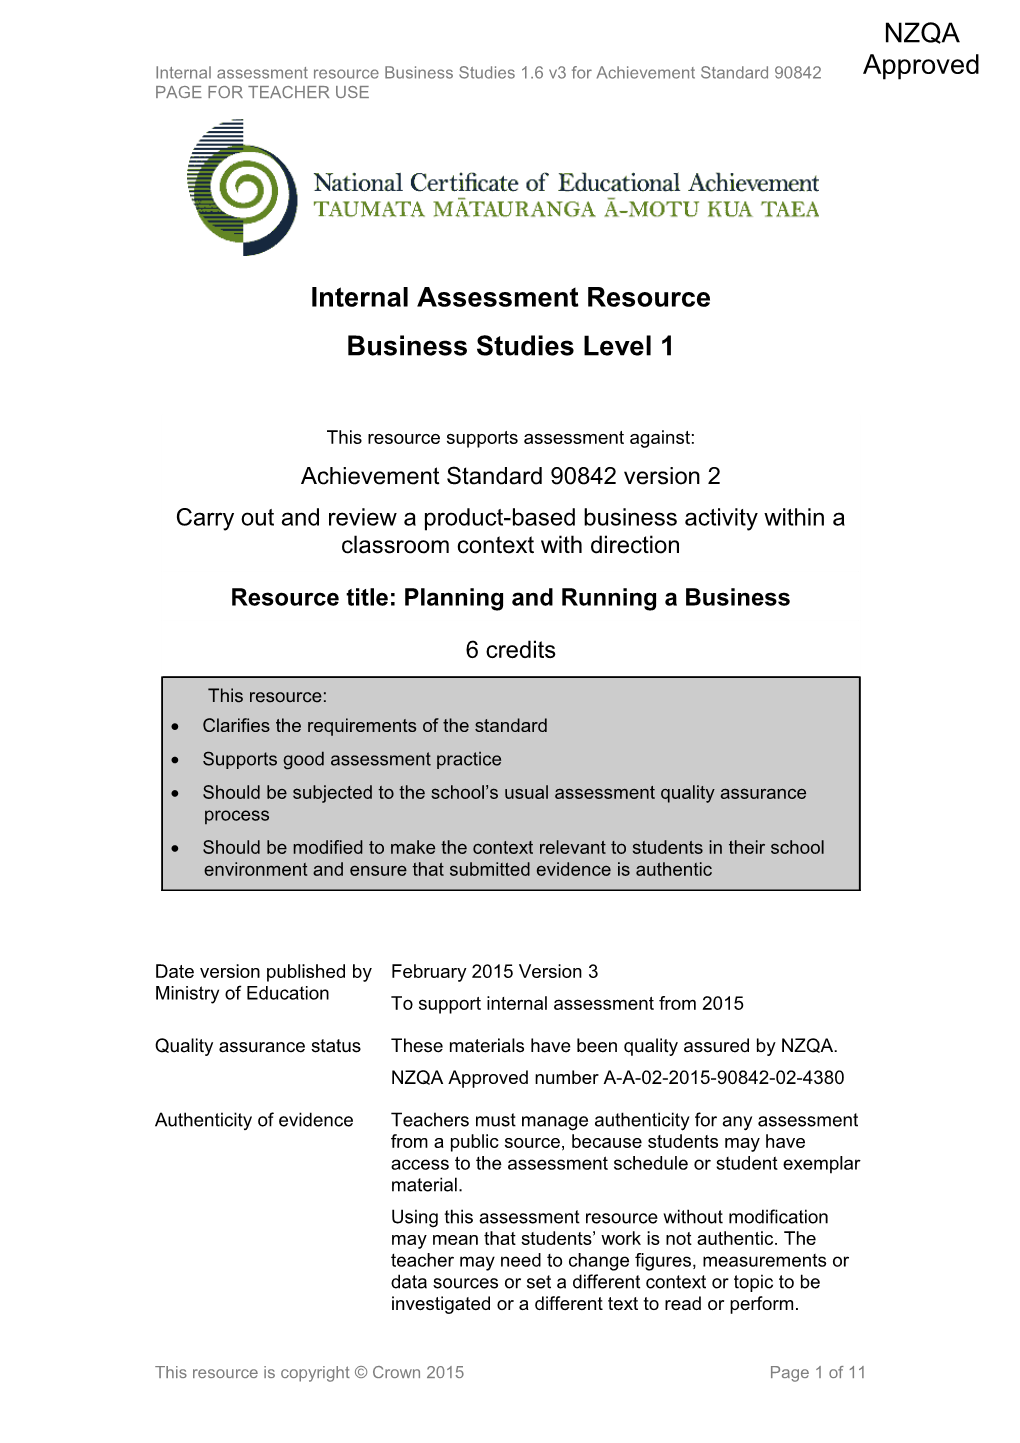 Level 1 Business Studies Internal Assessment Resource